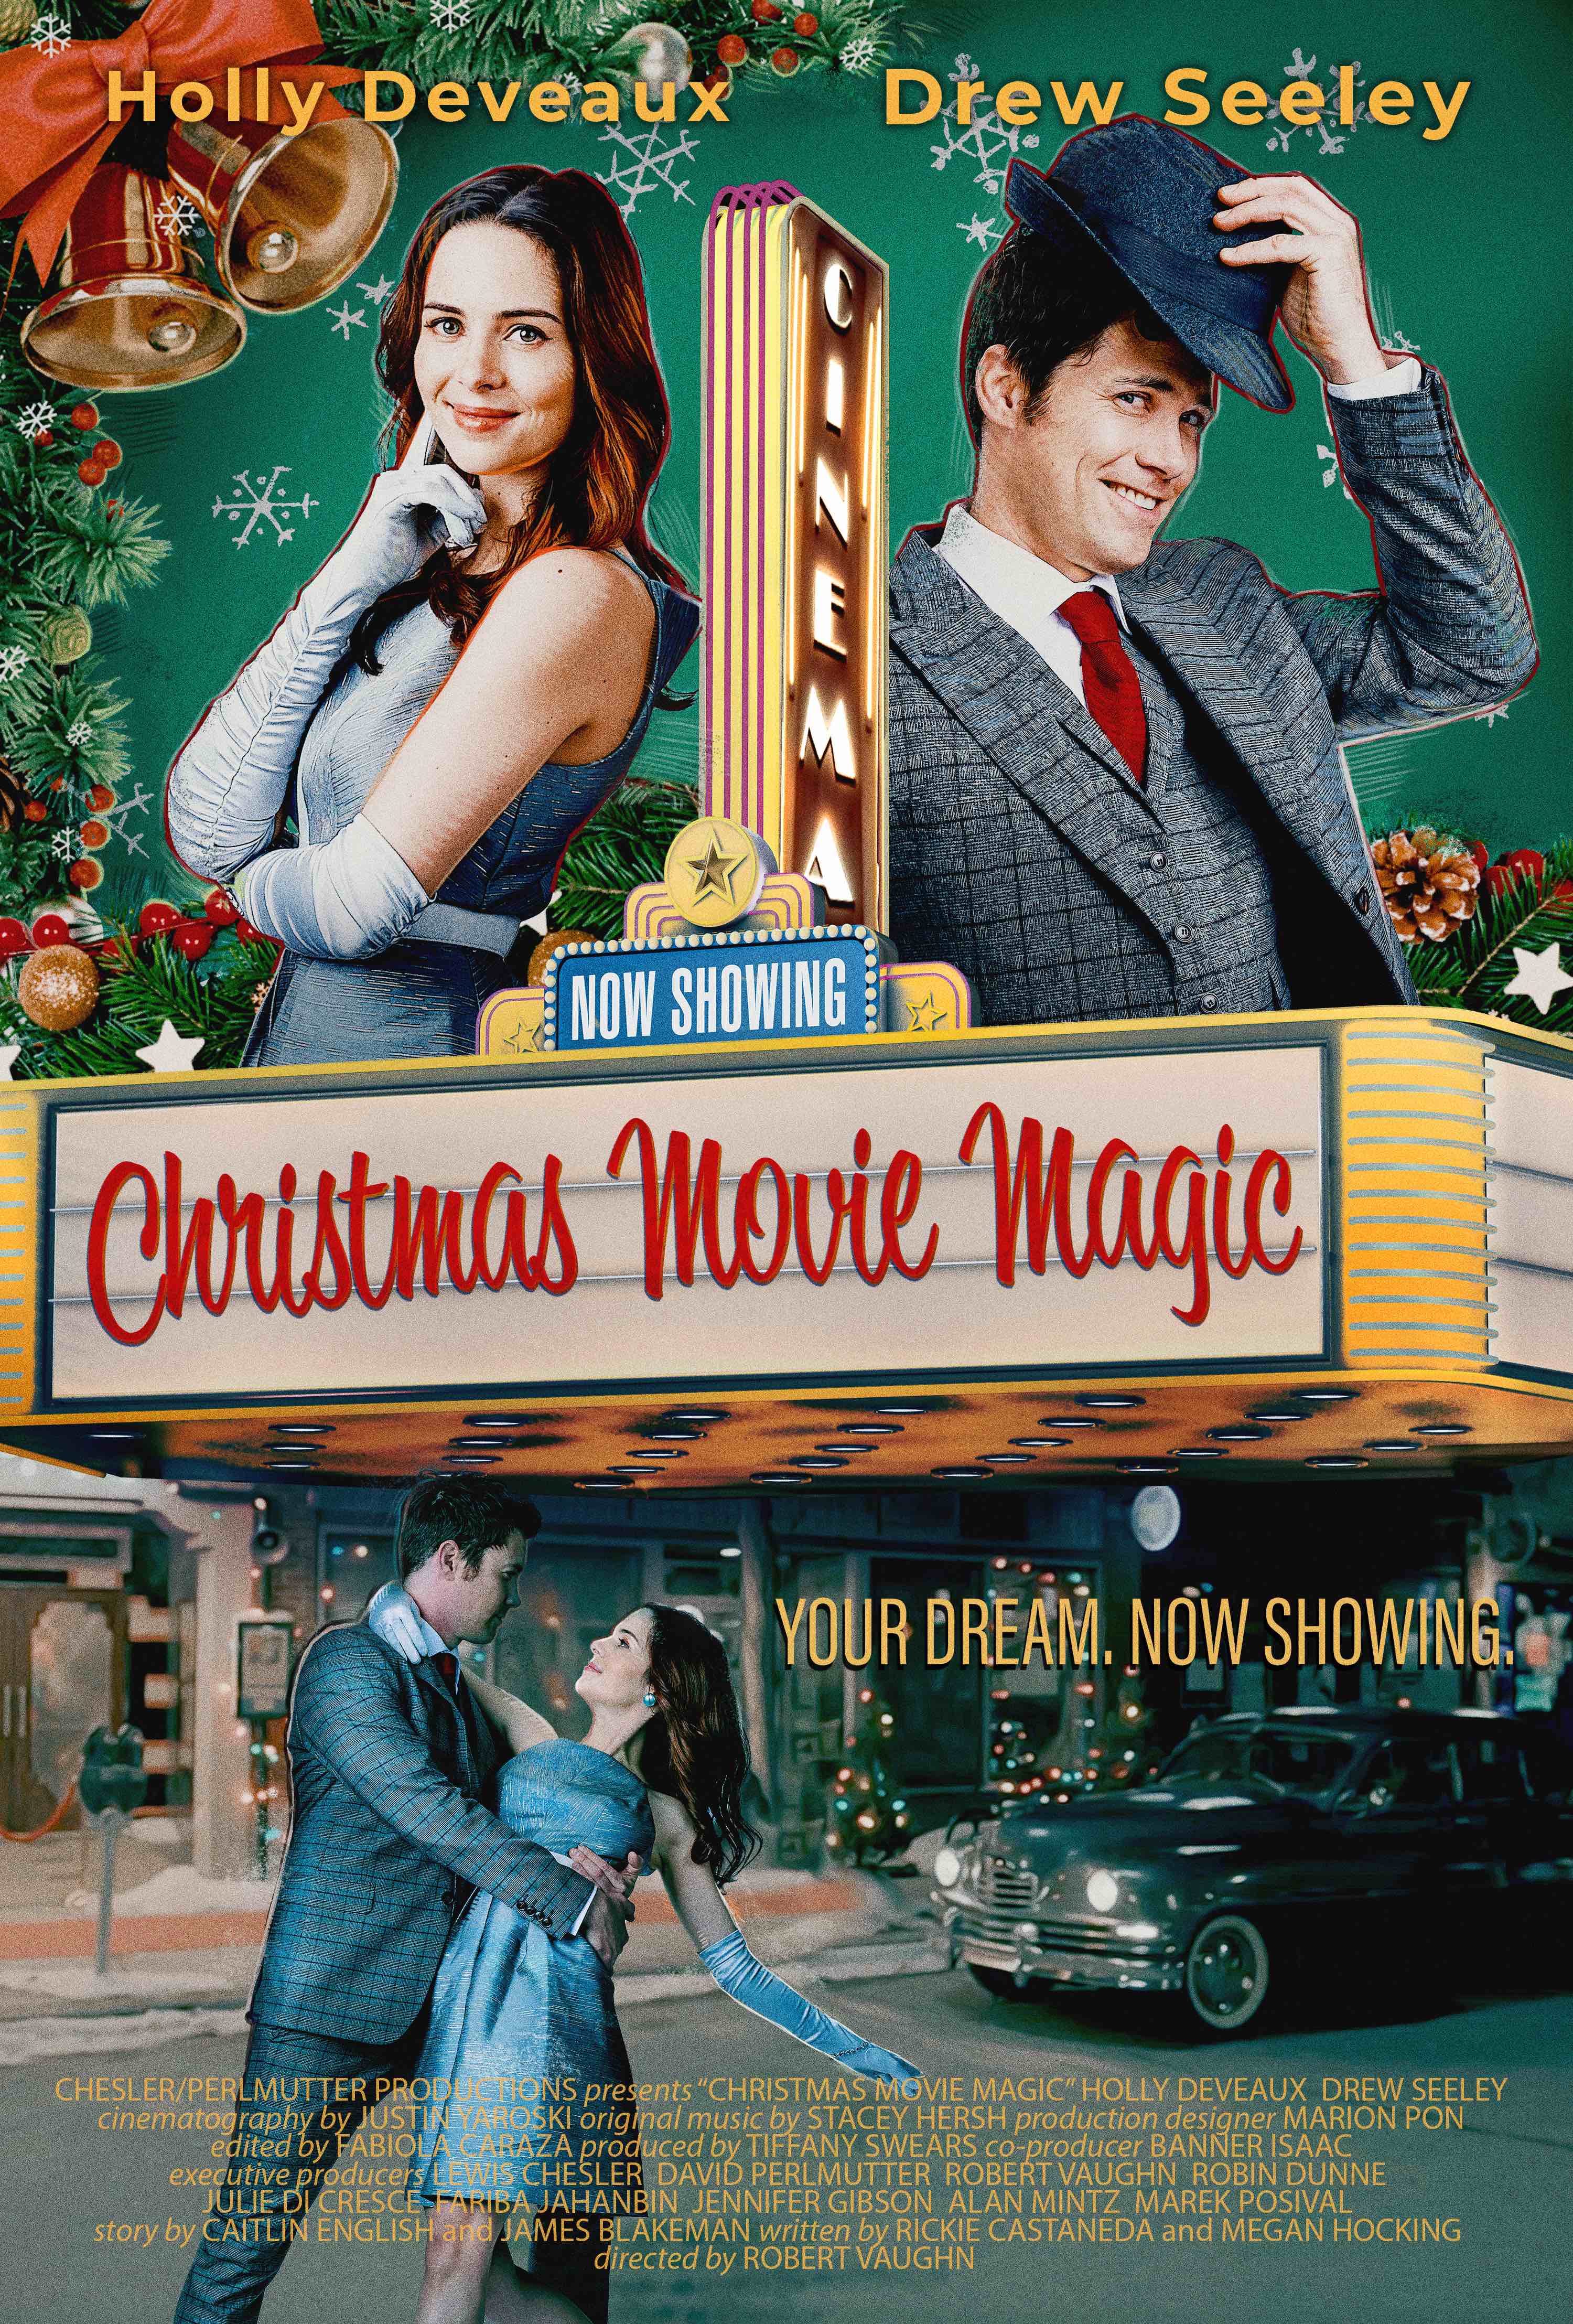 Christmas Movie Magic